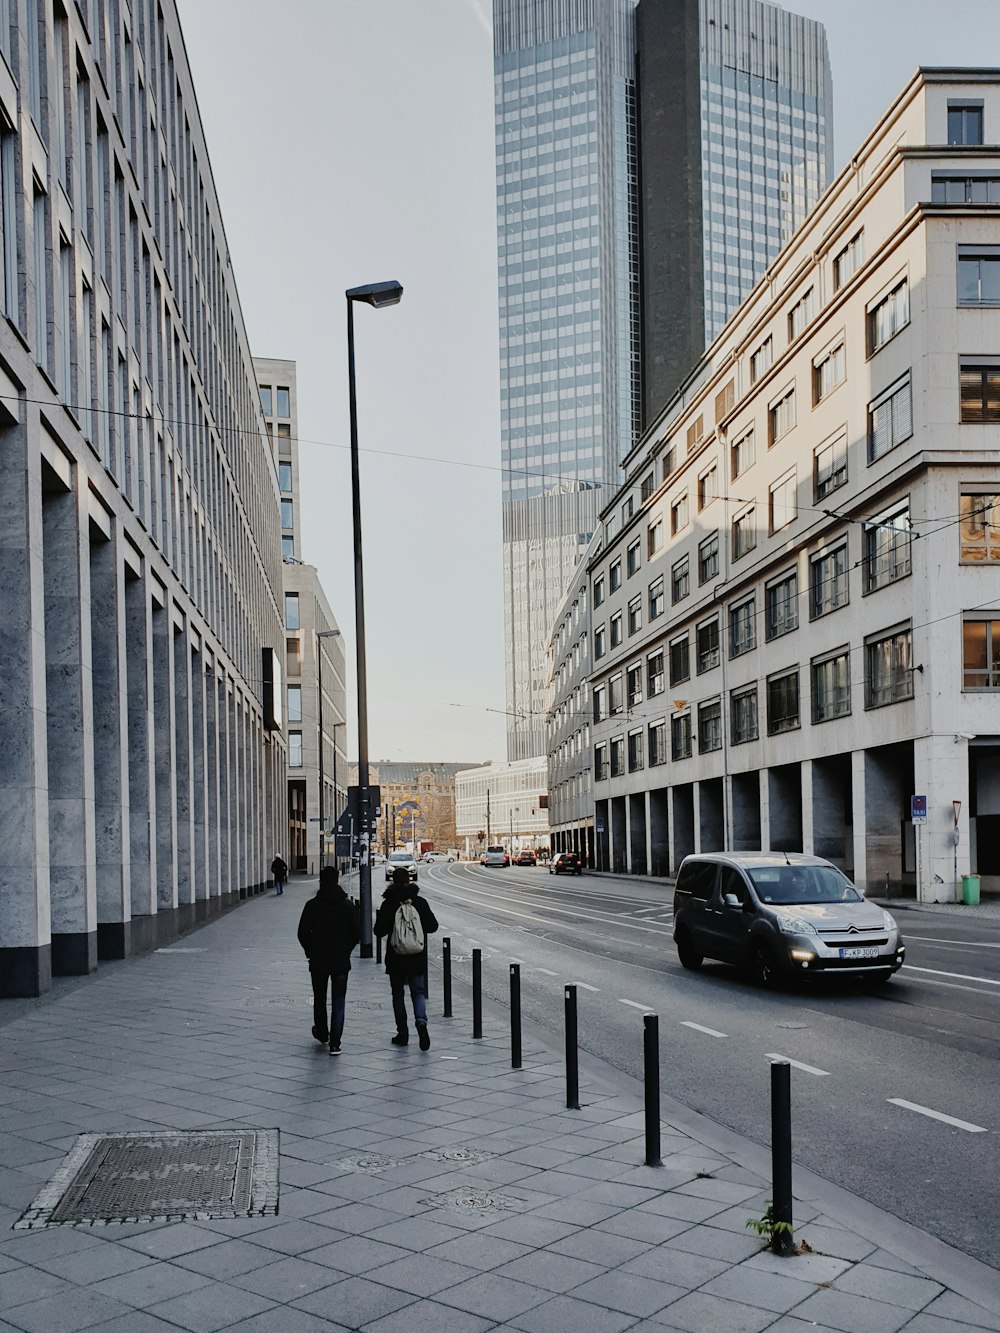 dos personas caminando cerca de la carretera y un SUV gris en la carretera al lado de edificios de gran altura